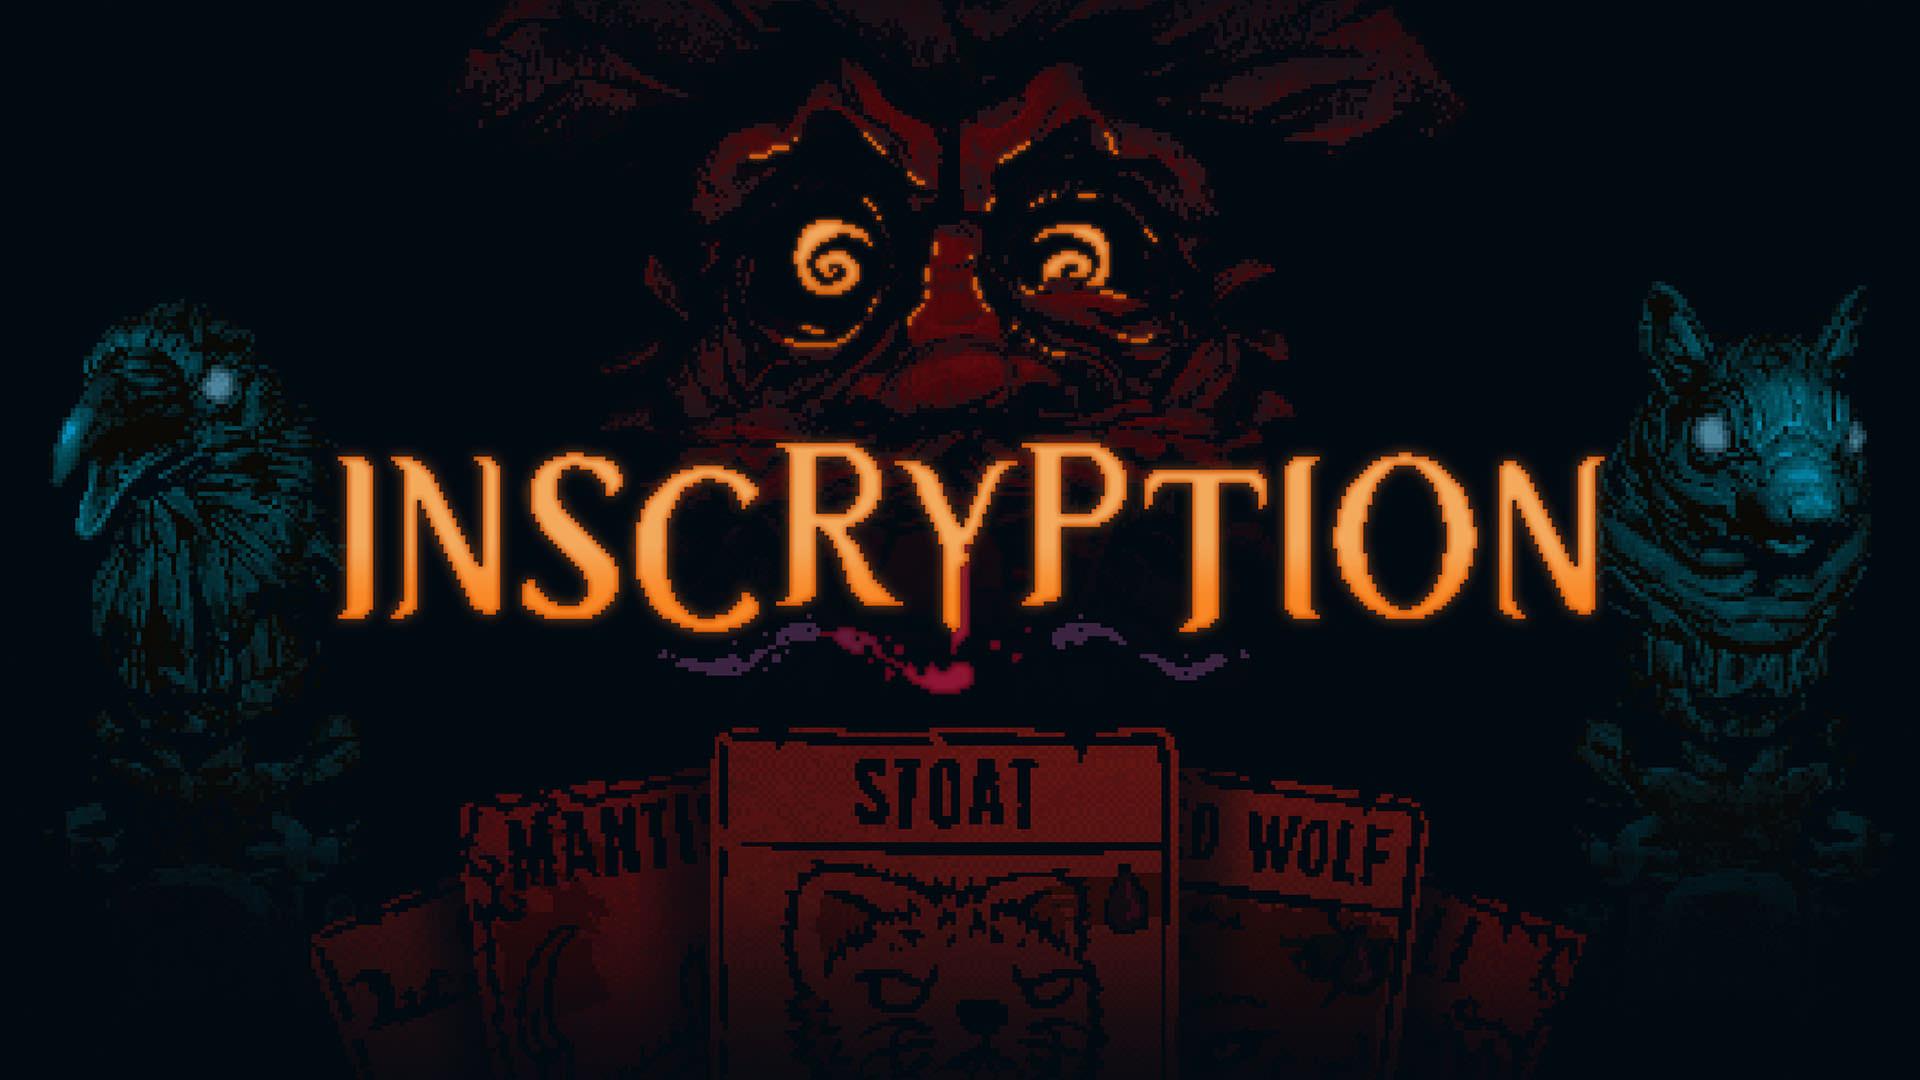 لوگو و سه شخصیت بازی Inscryption